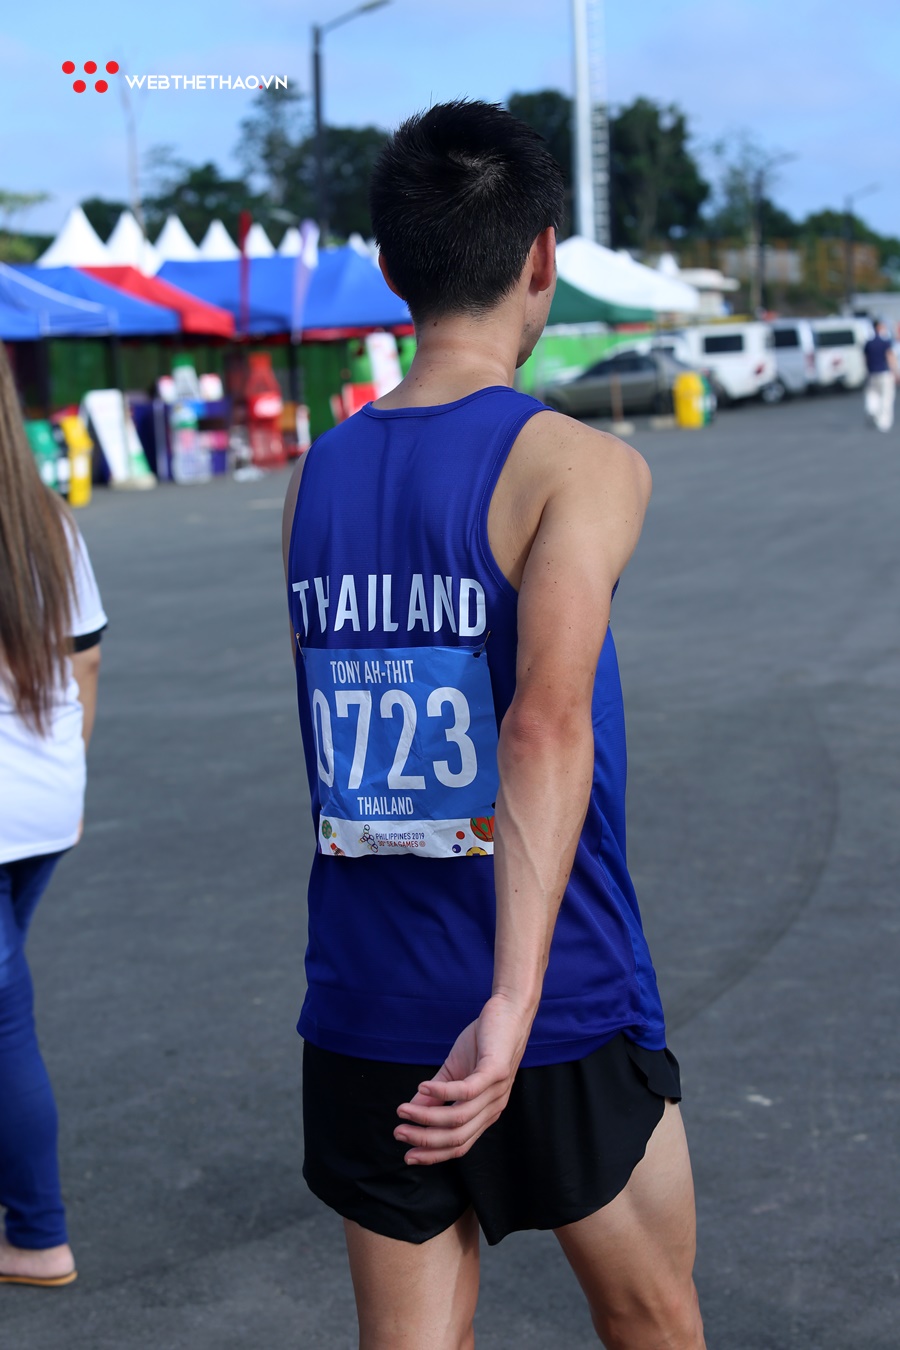 “Sao Tây nhập tịch” vỡ mộng đoạt HCV marathon SEA Games 30 cho Thái Lan vì chấn thương nặng